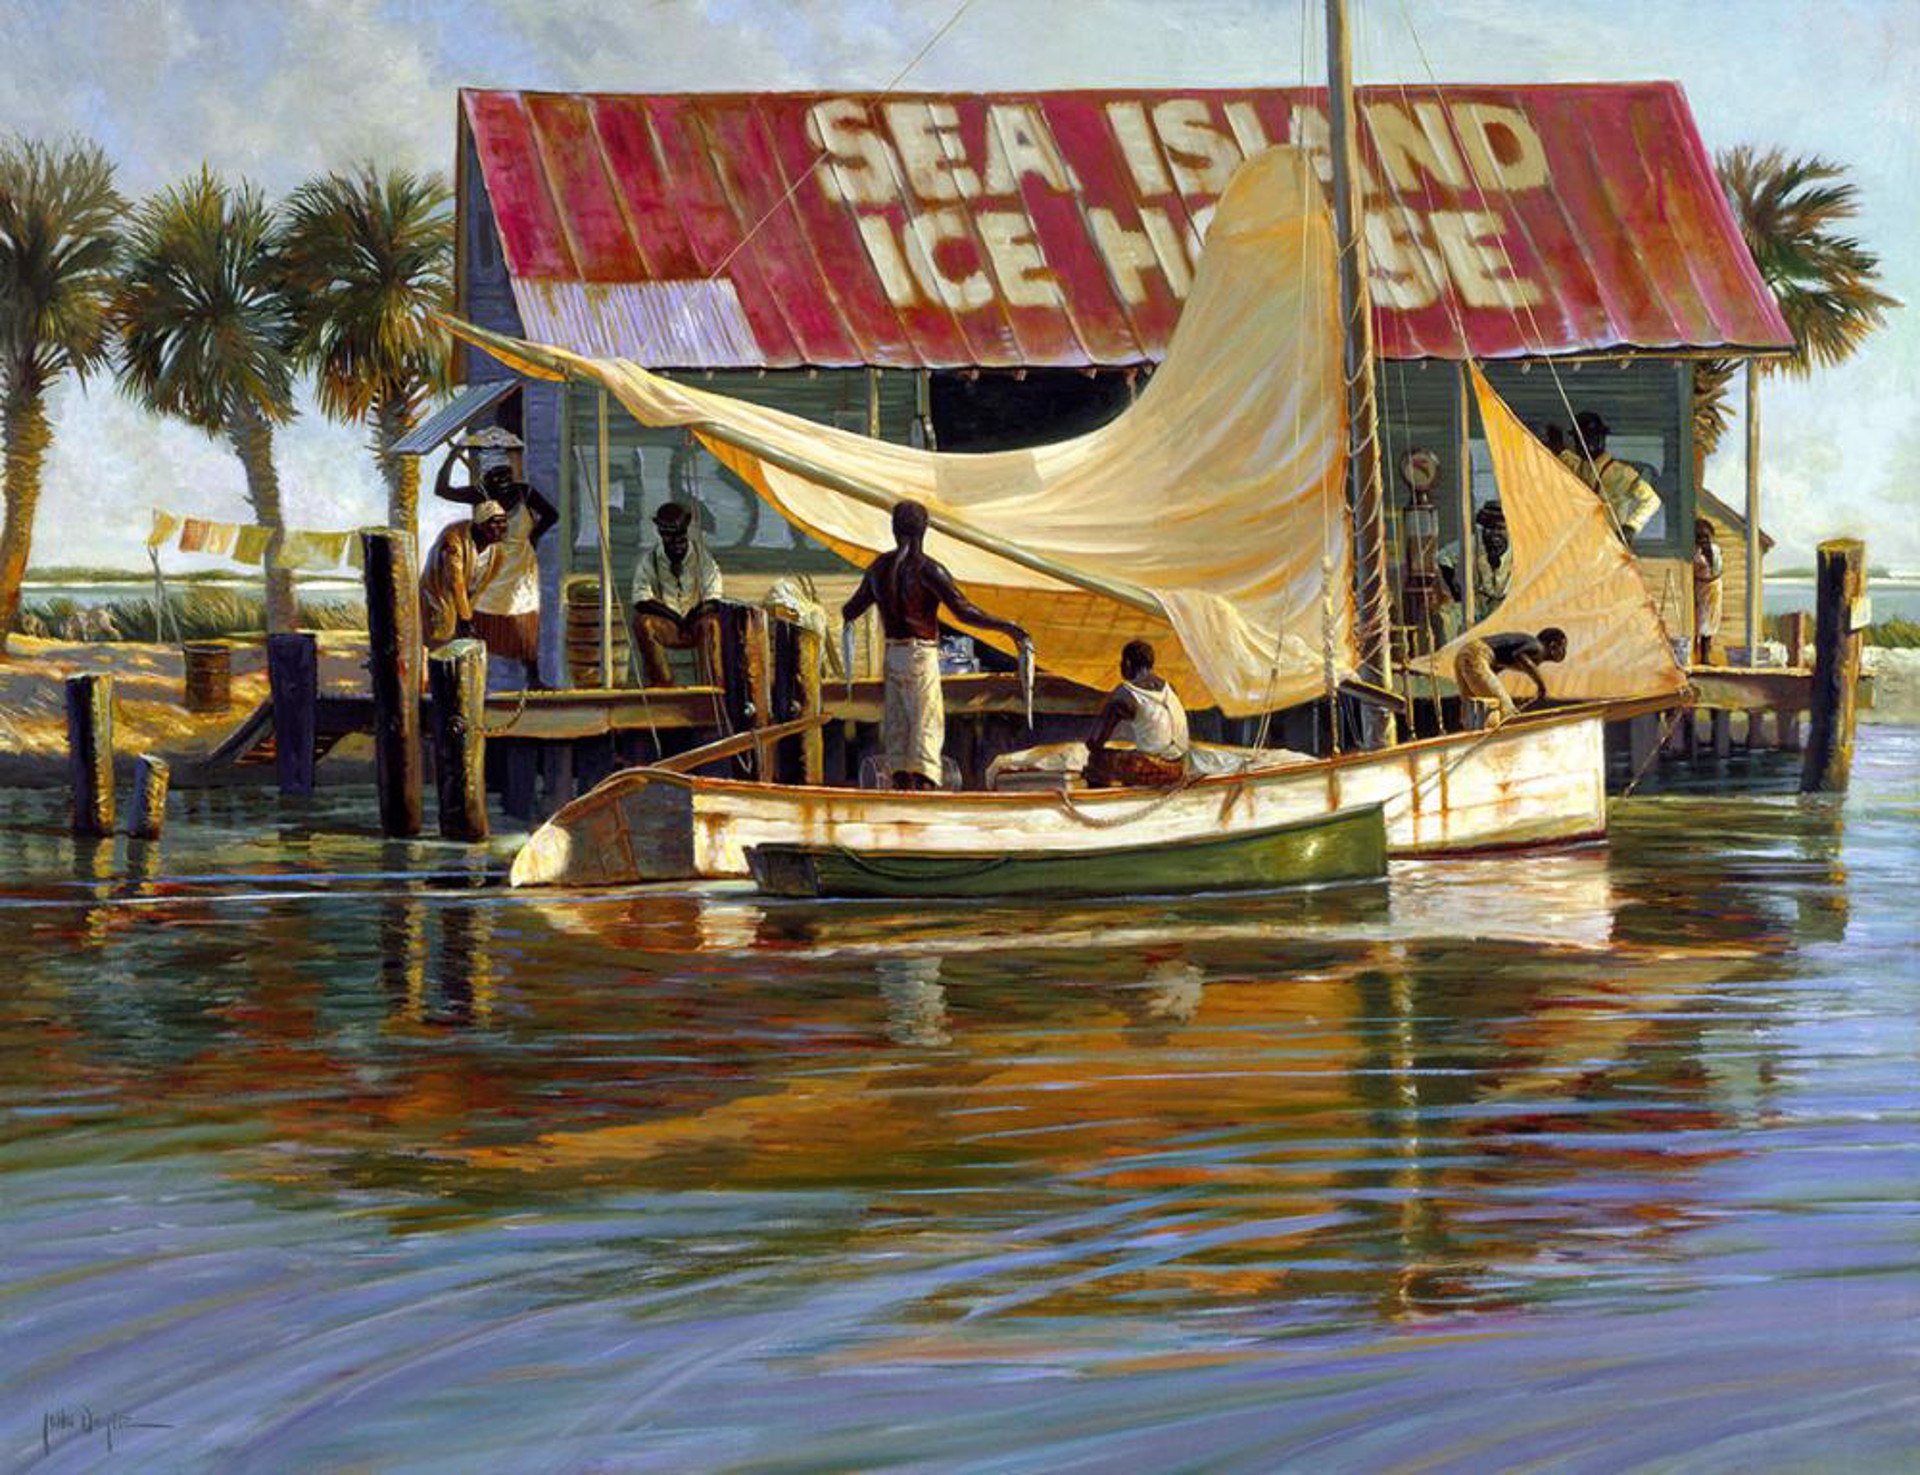 Sea Island Ice House by John Carroll Doyle